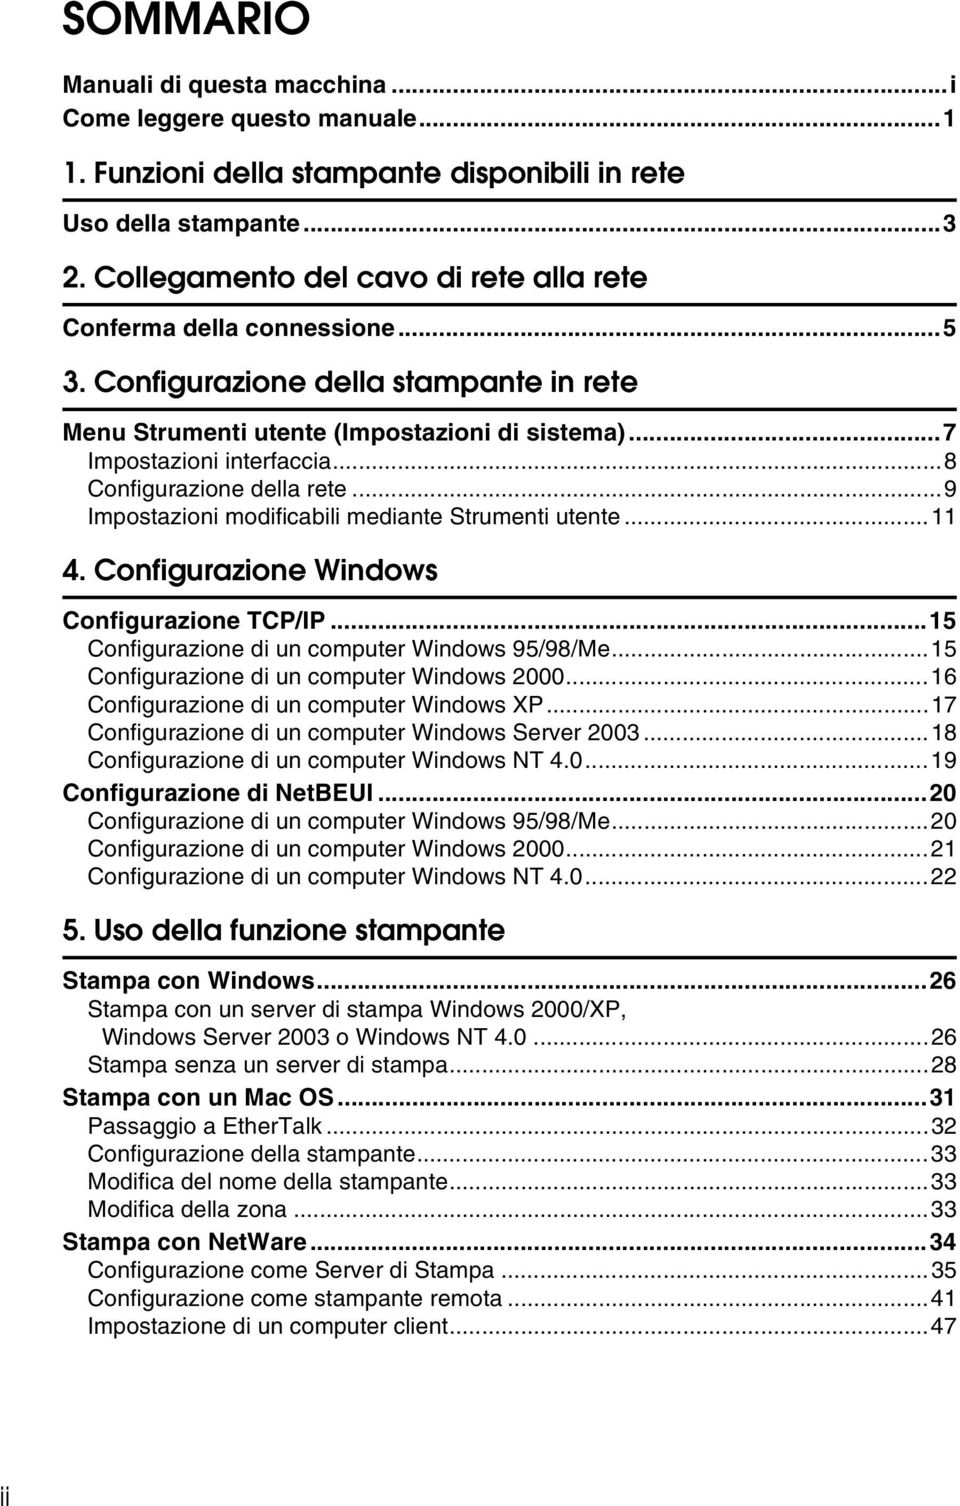 ..8 Configurazione della rete...9 Impostazioni modificabili mediante Strumenti utente...11 4. Configurazione Windows Configurazione TCP/IP...15 Configurazione di un computer Windows 95/98/Me.